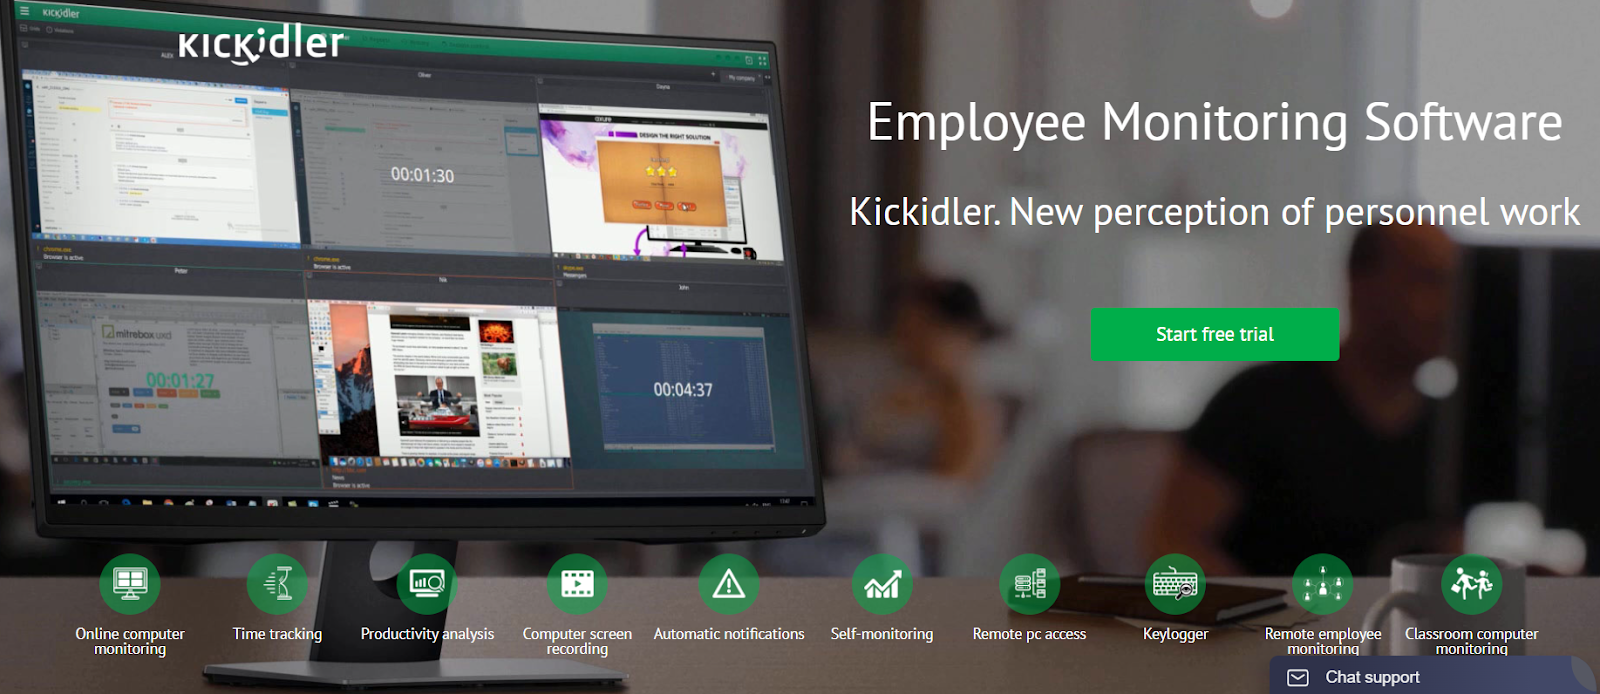 employee monitoring tool - kickidler